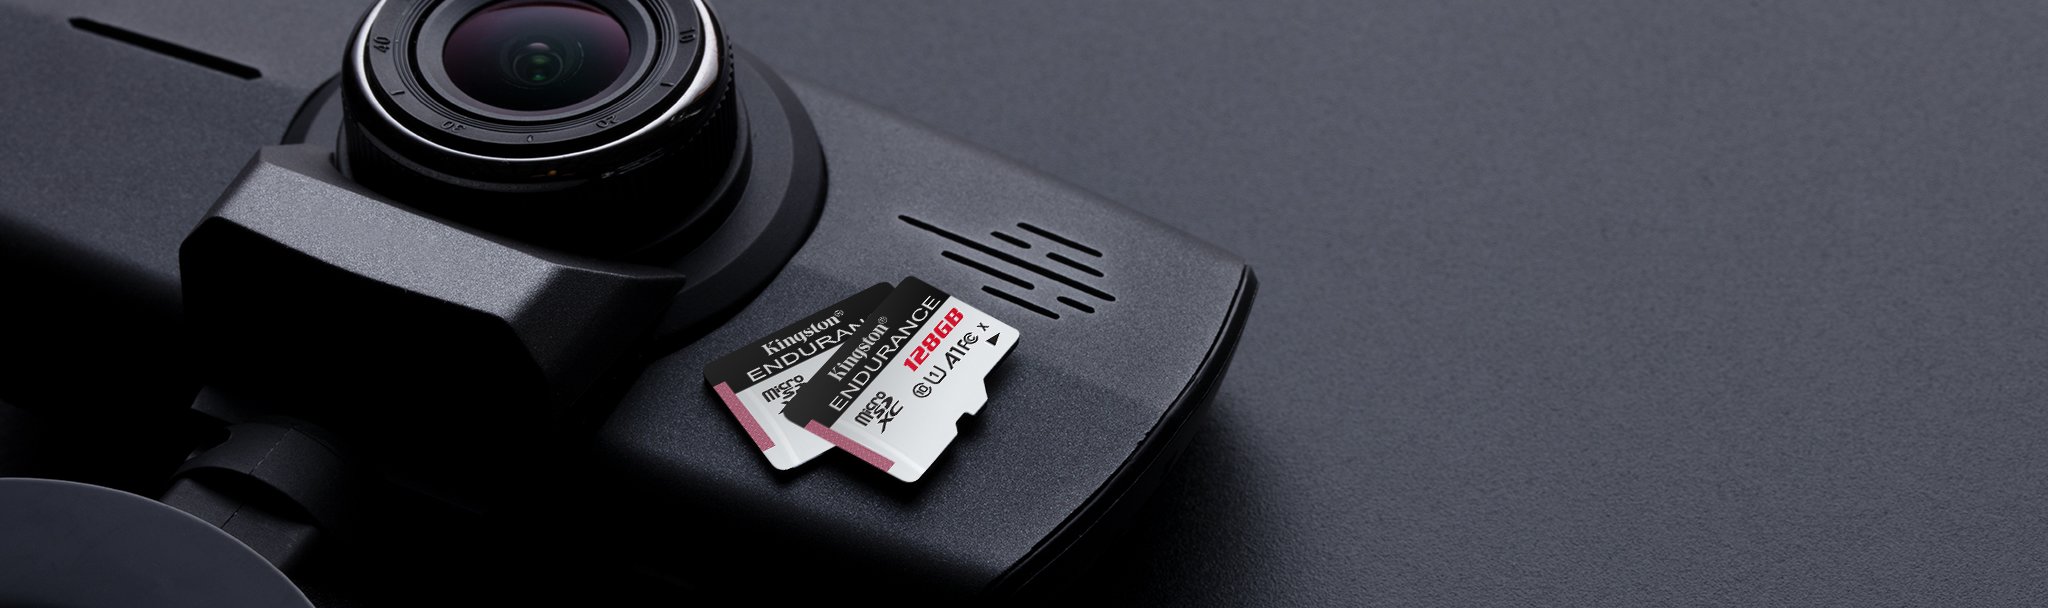 Kingston te recomienda adquirir una tarjeta High Endurance microSD para tu cámara de vigilancia en el hogar, ya que esta especialmente diseñada